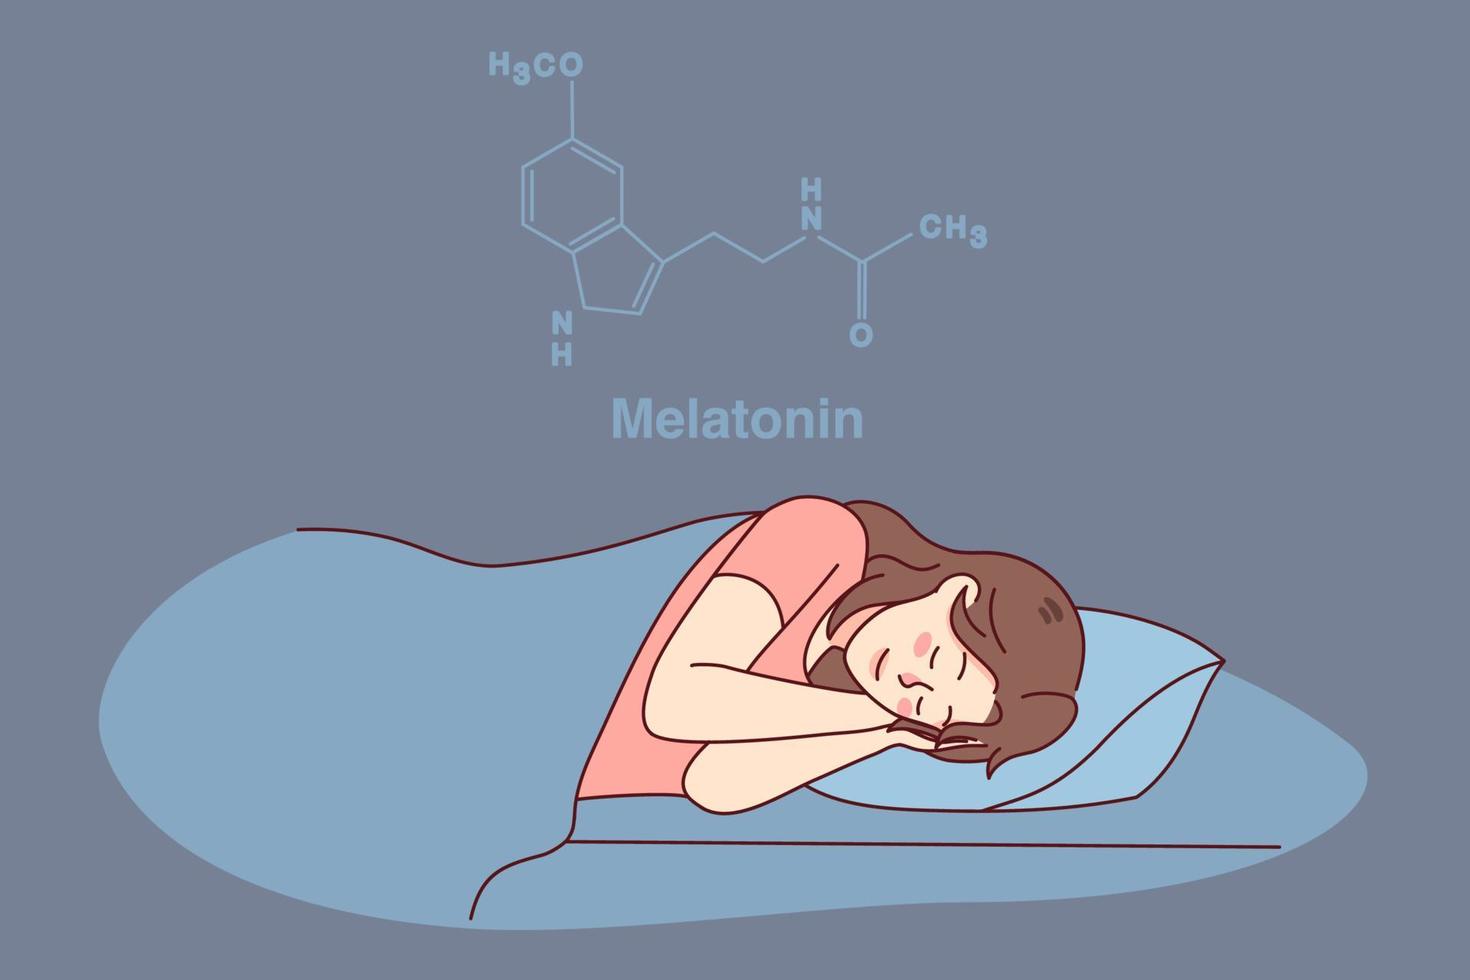 calma mujer dormido en cama teniendo melatonina hormona producido. contento niña dormido a hogar, disfrutando pacífico siesta o sueño. sano dormido y ciencia. vector ilustración.